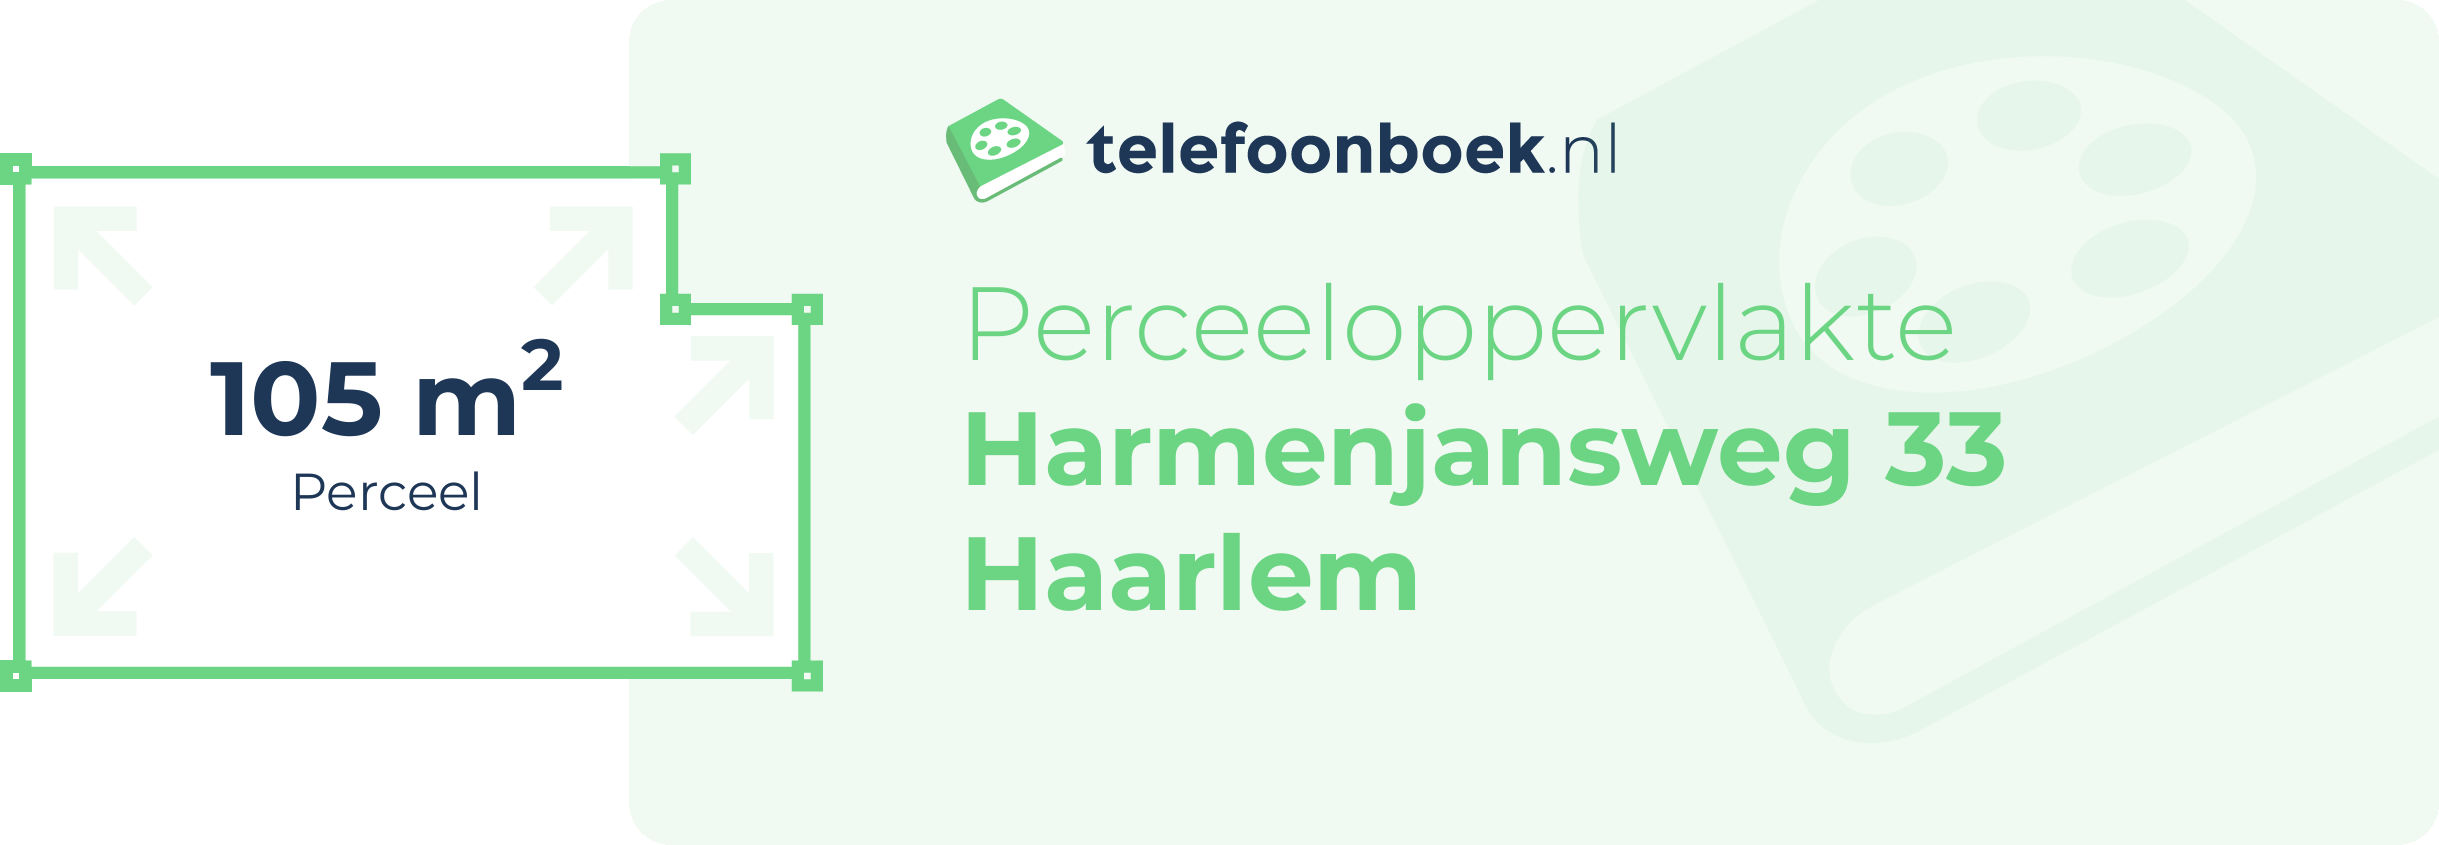 Perceeloppervlakte Harmenjansweg 33 Haarlem